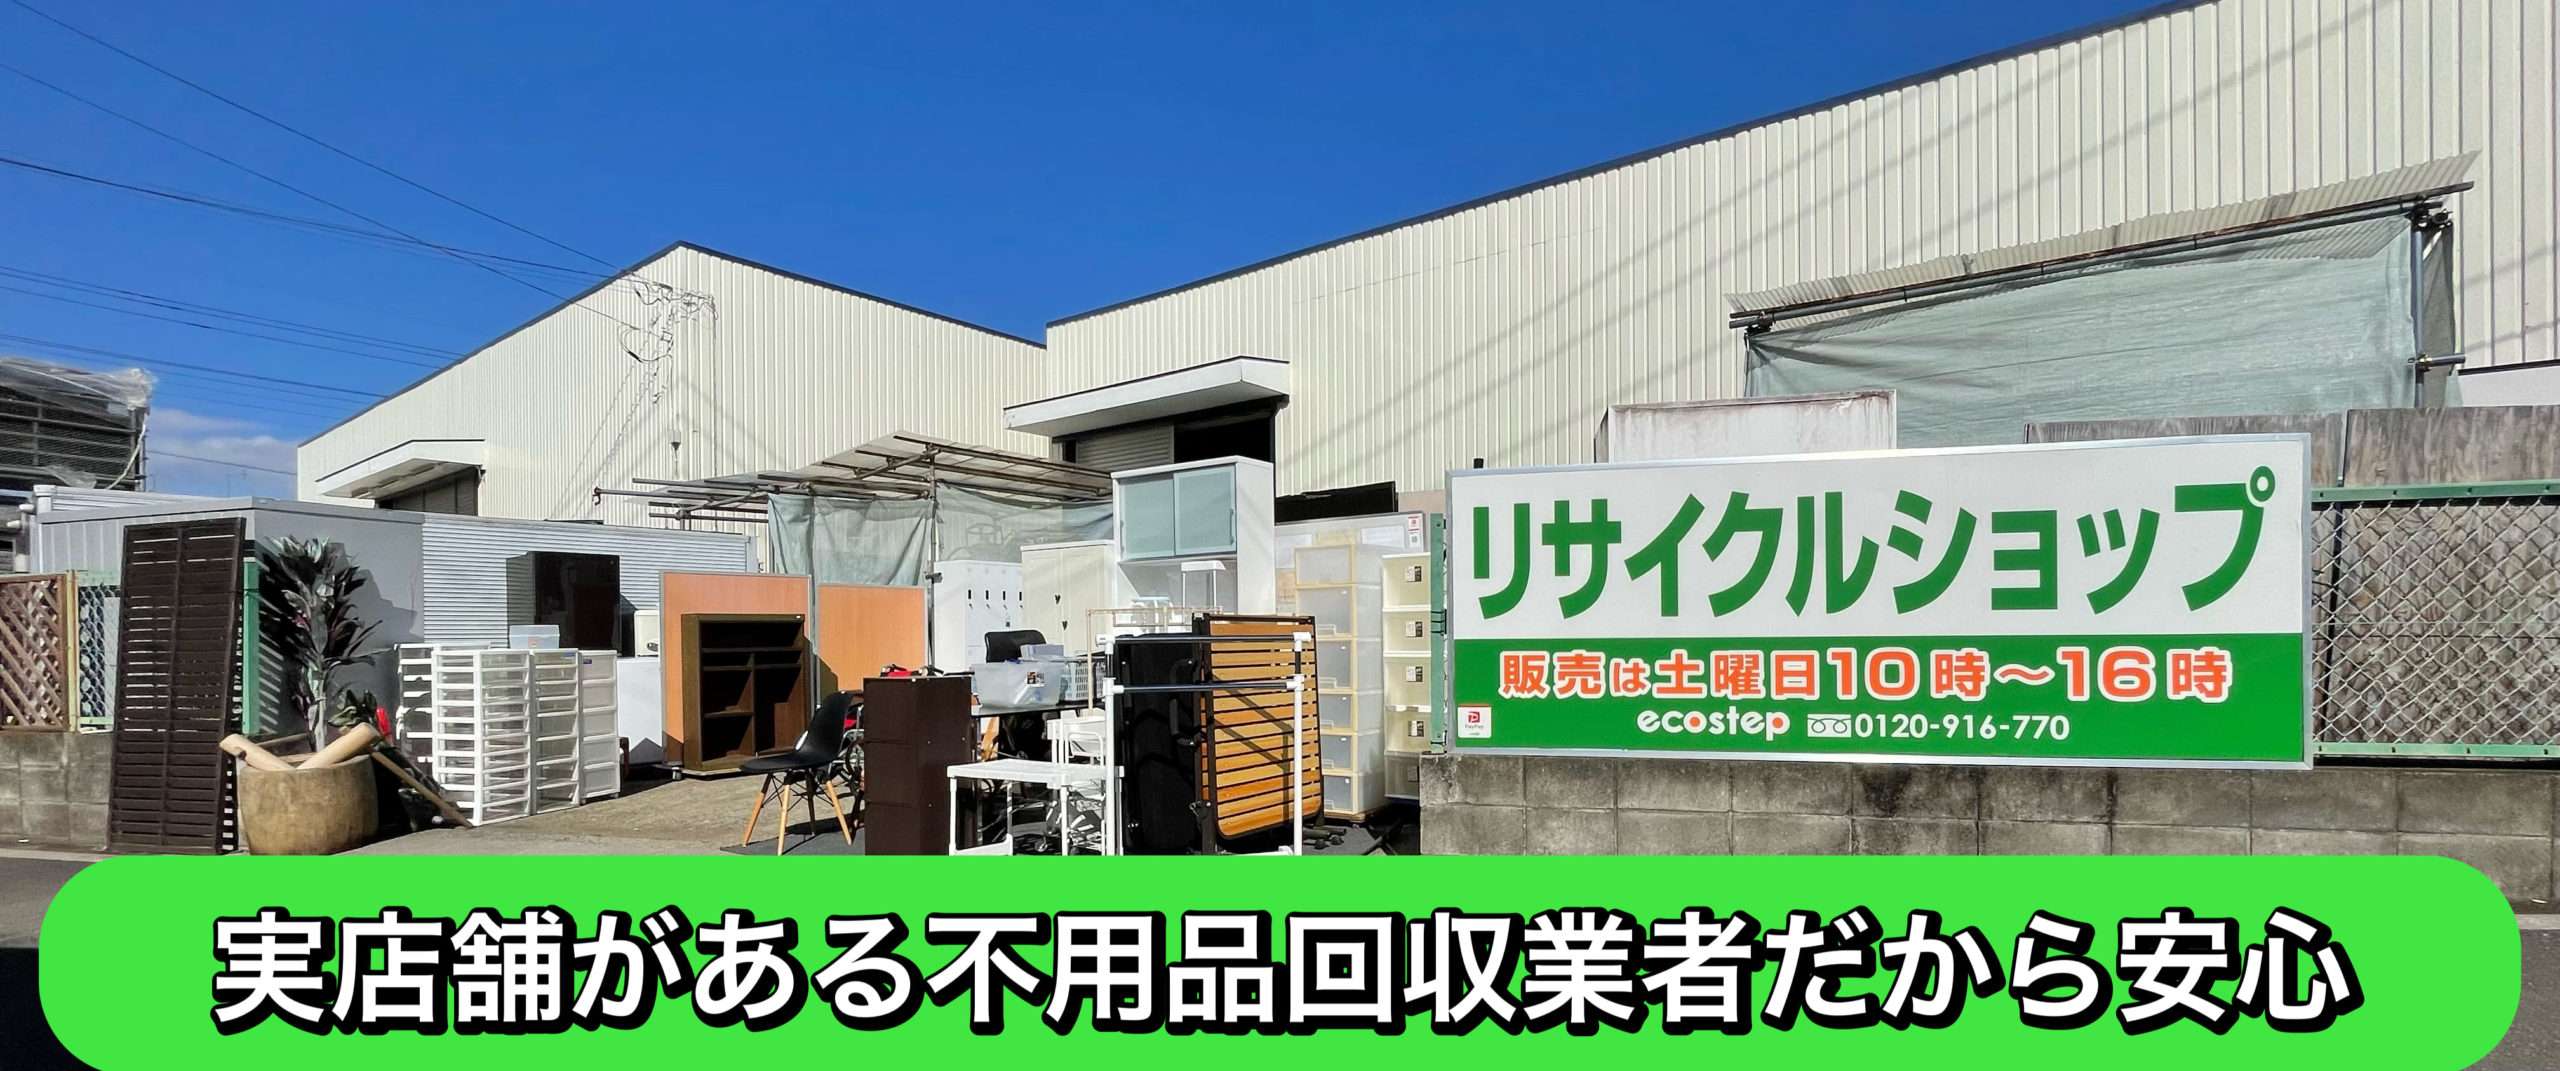 サイトマップ｜埼玉県の不用品買取・回収はエコステップ！